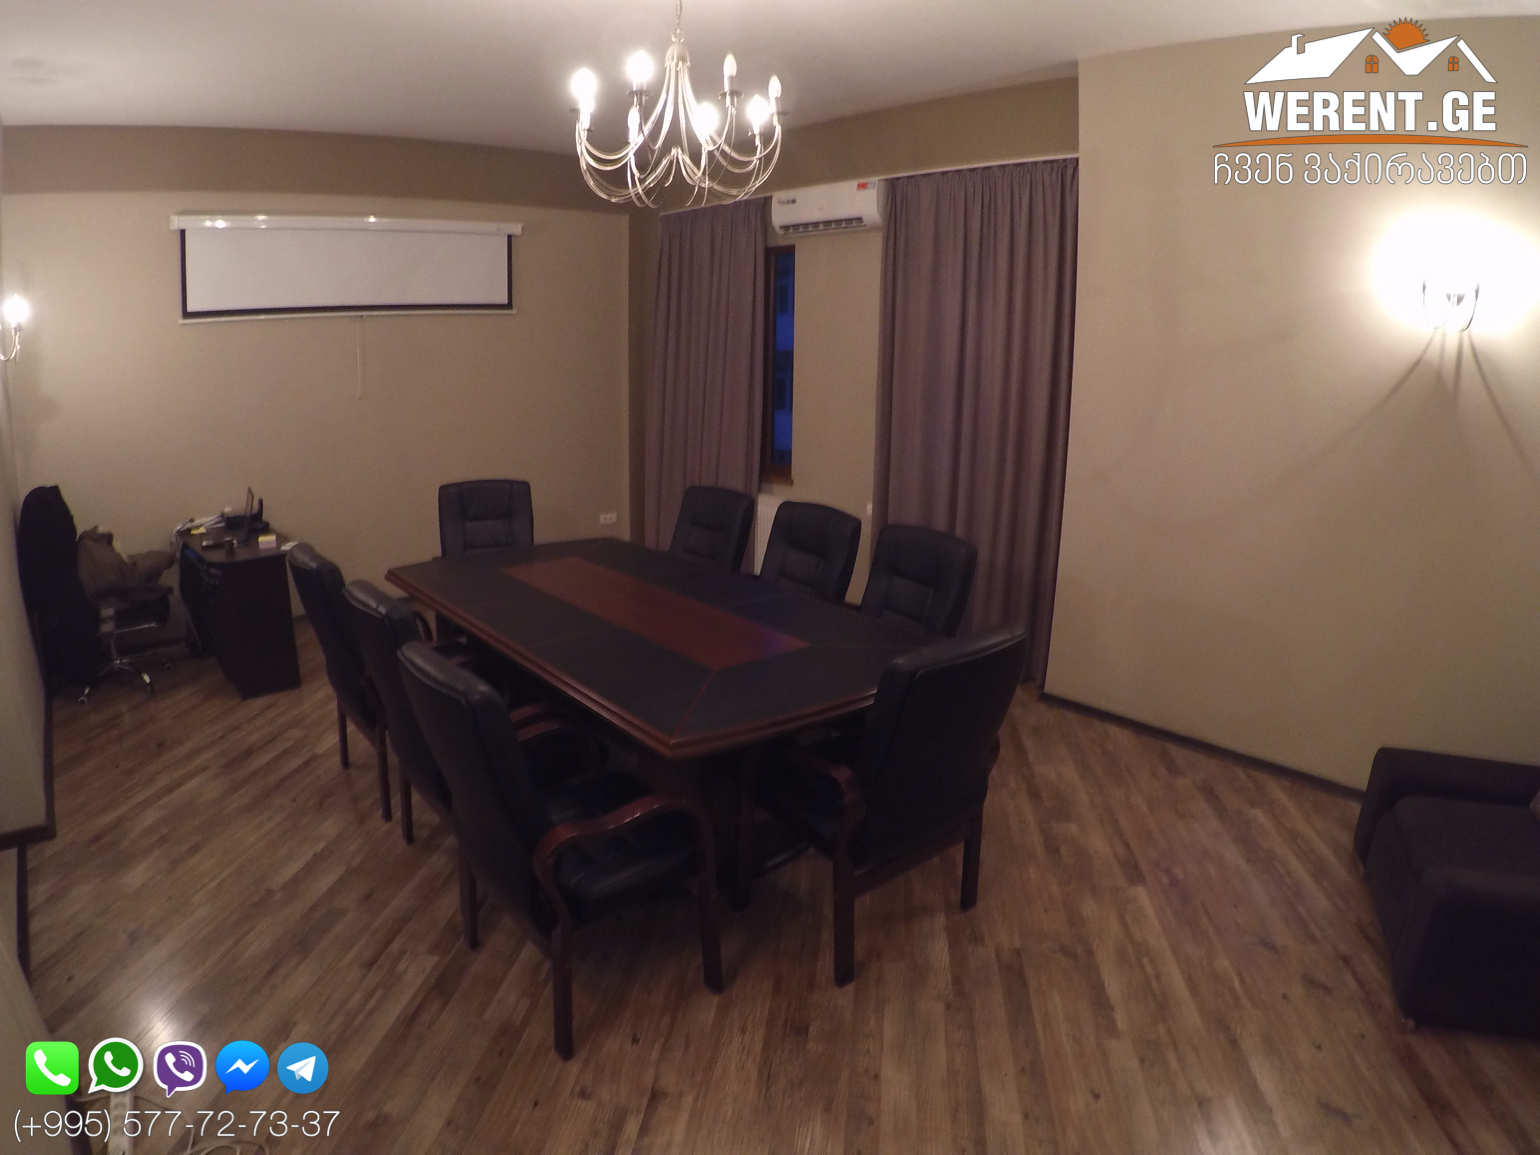 Сдается 3-Комнатная Квартира под офис с мебелью на пр. Казбеги, Сабуртало, Тбилиси